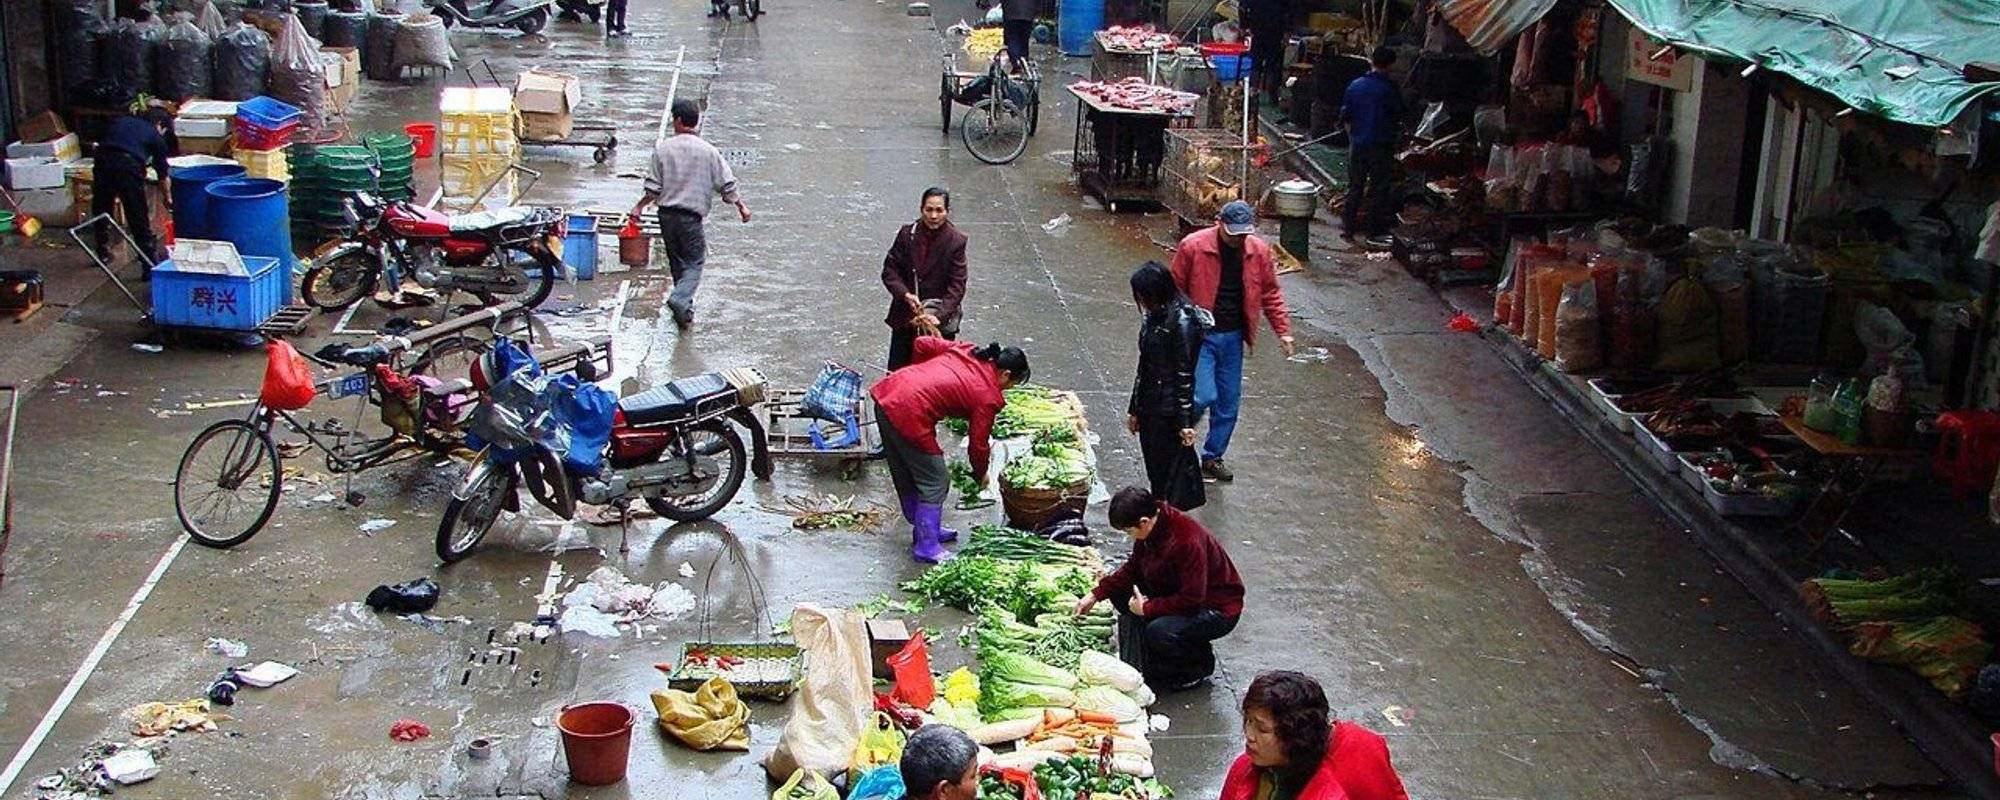 Shaoguan - Wet Market again / Frischmarkt wieder mal